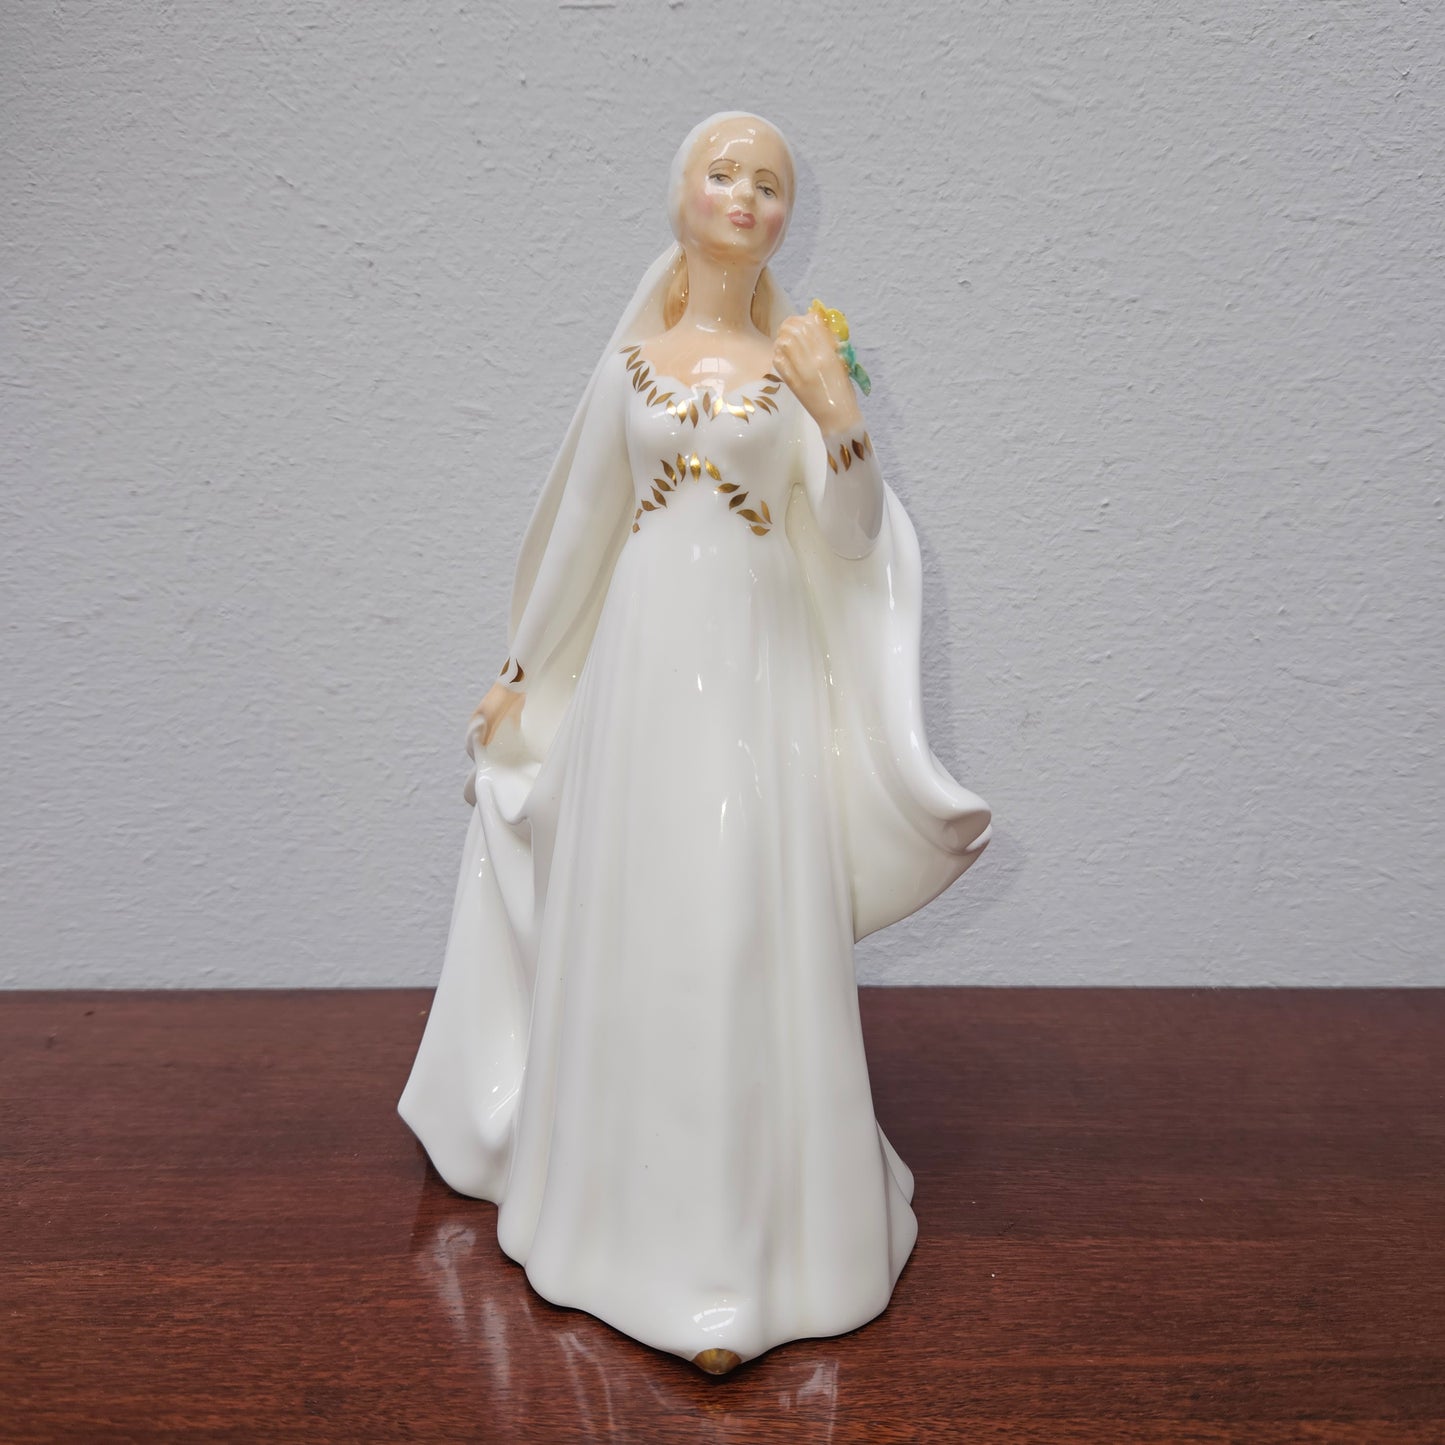 Royal Doulton "Bride" Figurine.